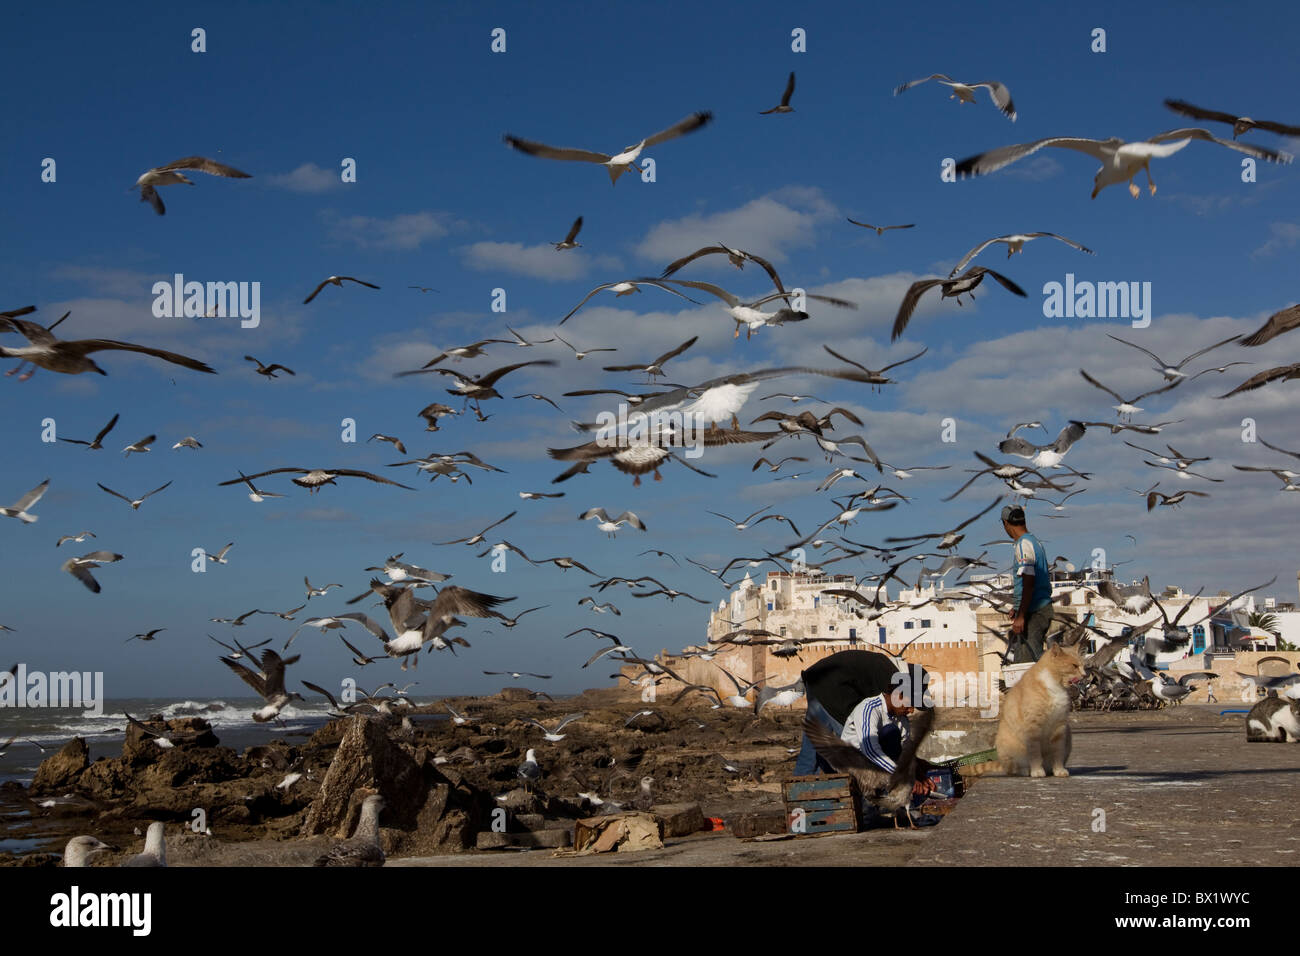 Les goélands se nourrissent de restes de poissons en tant que pêcheur de poissons de l'intestin à Essaouira,Maroc Banque D'Images